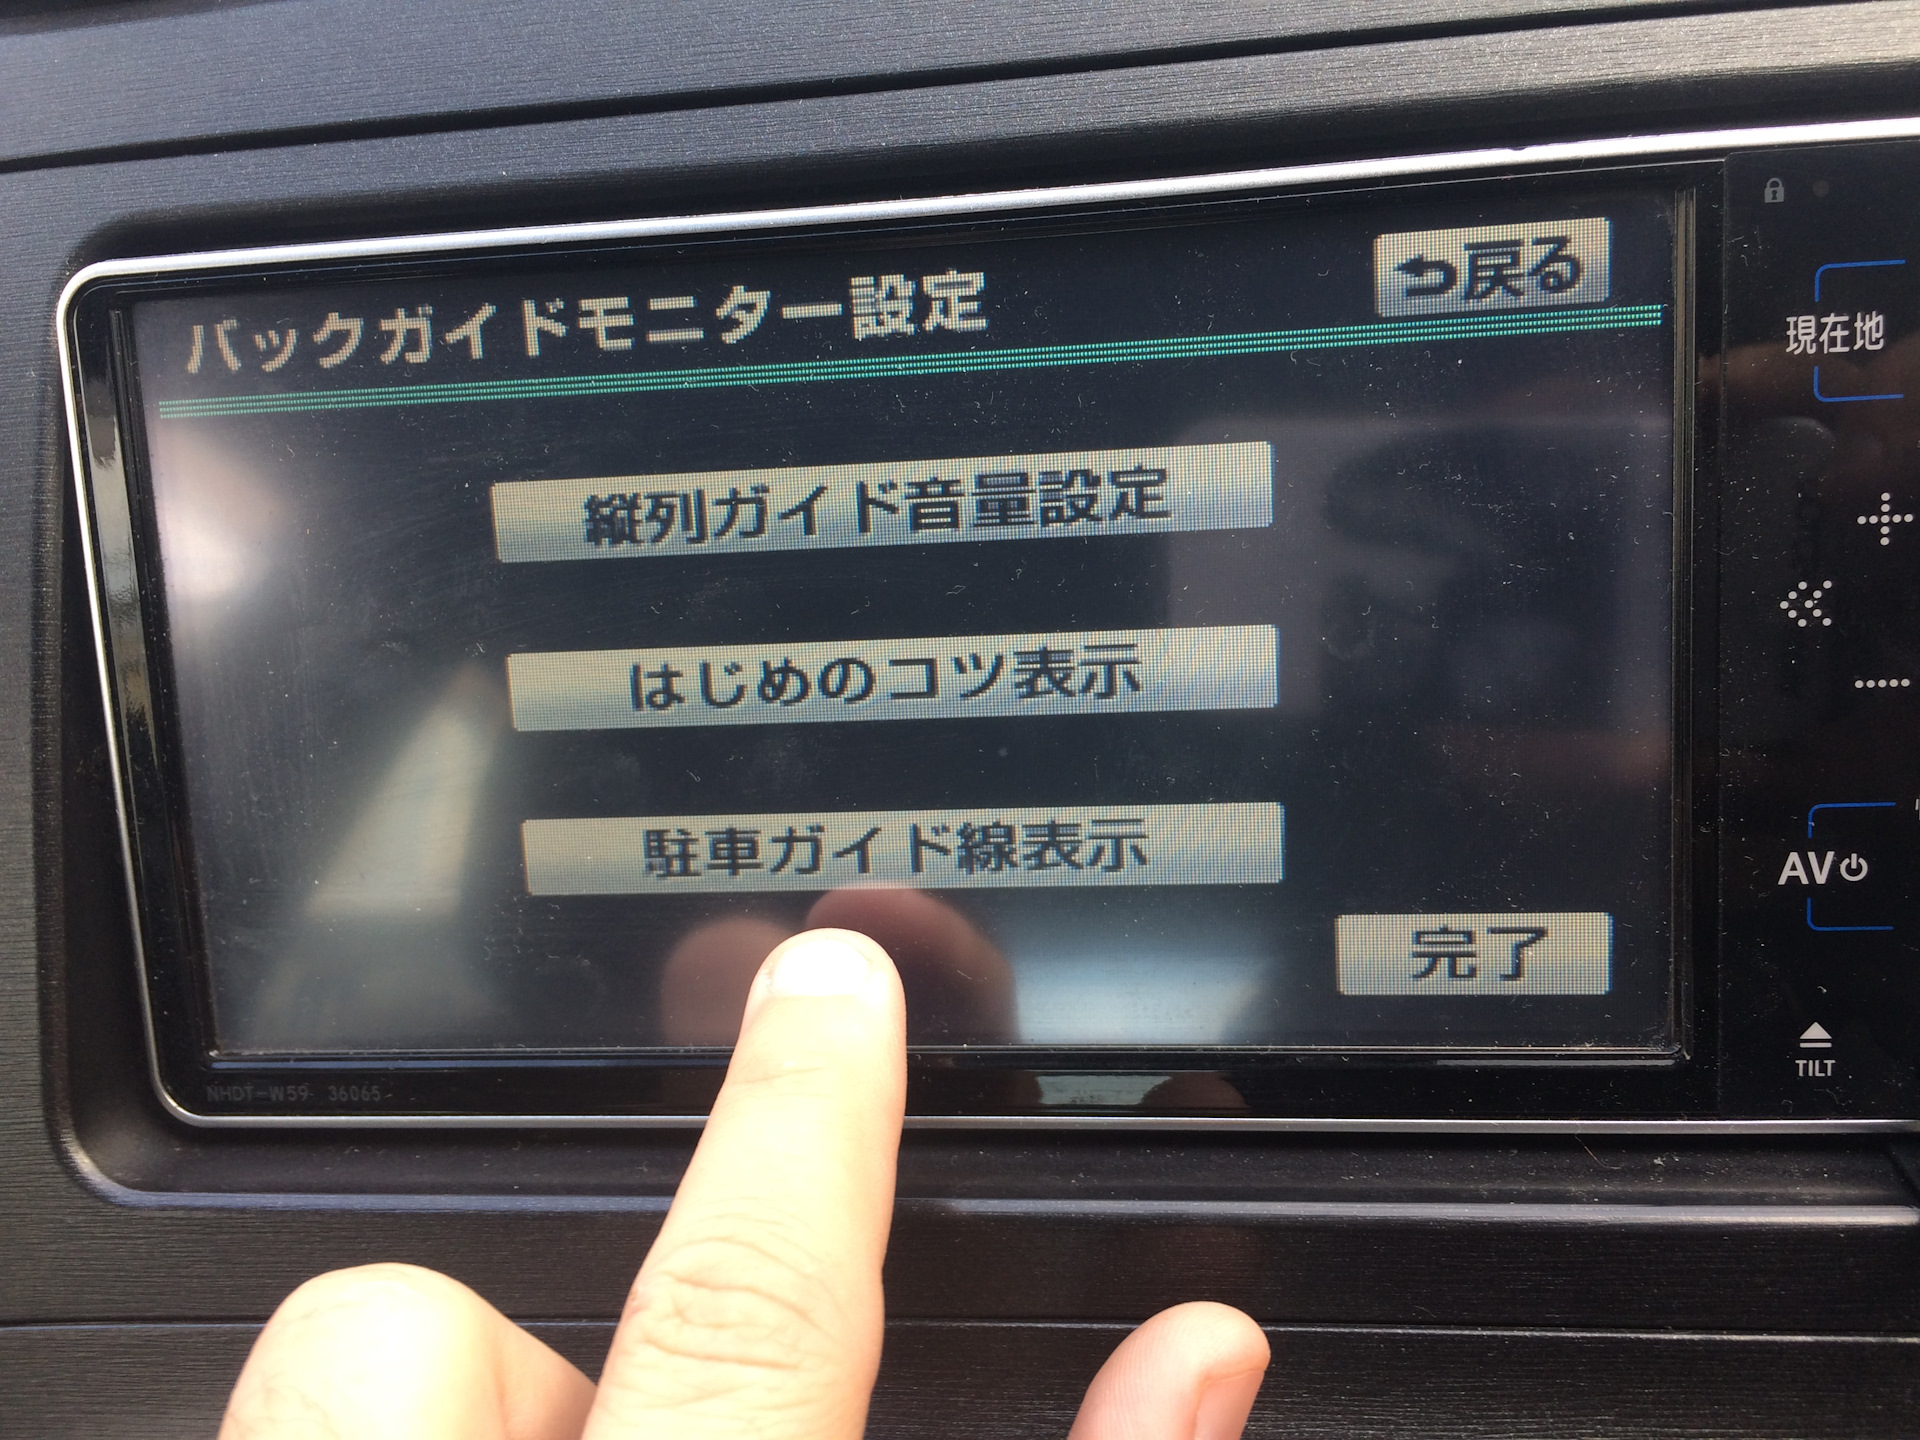 Перевести японскую магнитолу. Автомагнитола Toyota Prius NHDT-w59. Японская магнитола NHDT-w59. NHDT-w59 блютуз. Блютуз японская автомагнитола w59g.